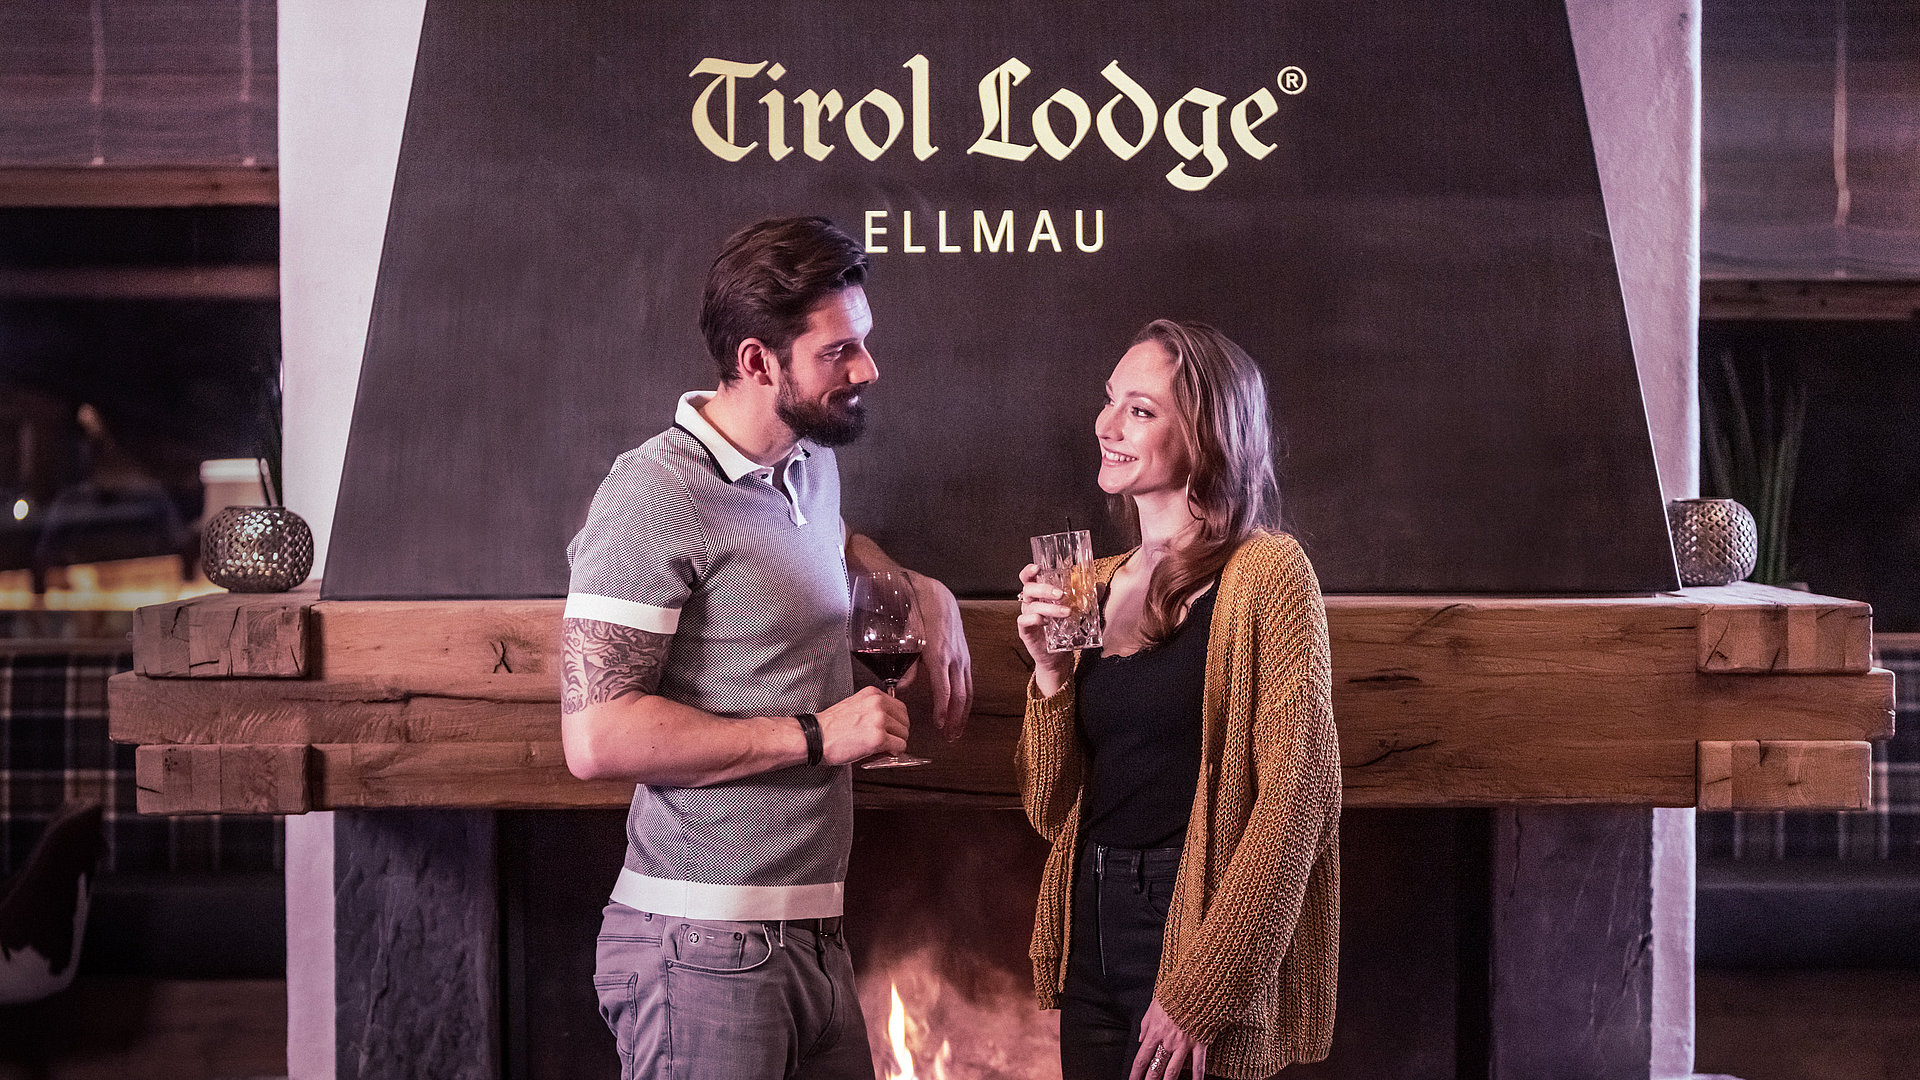 Carefree evening in the Tirol Lodge in Ellmau